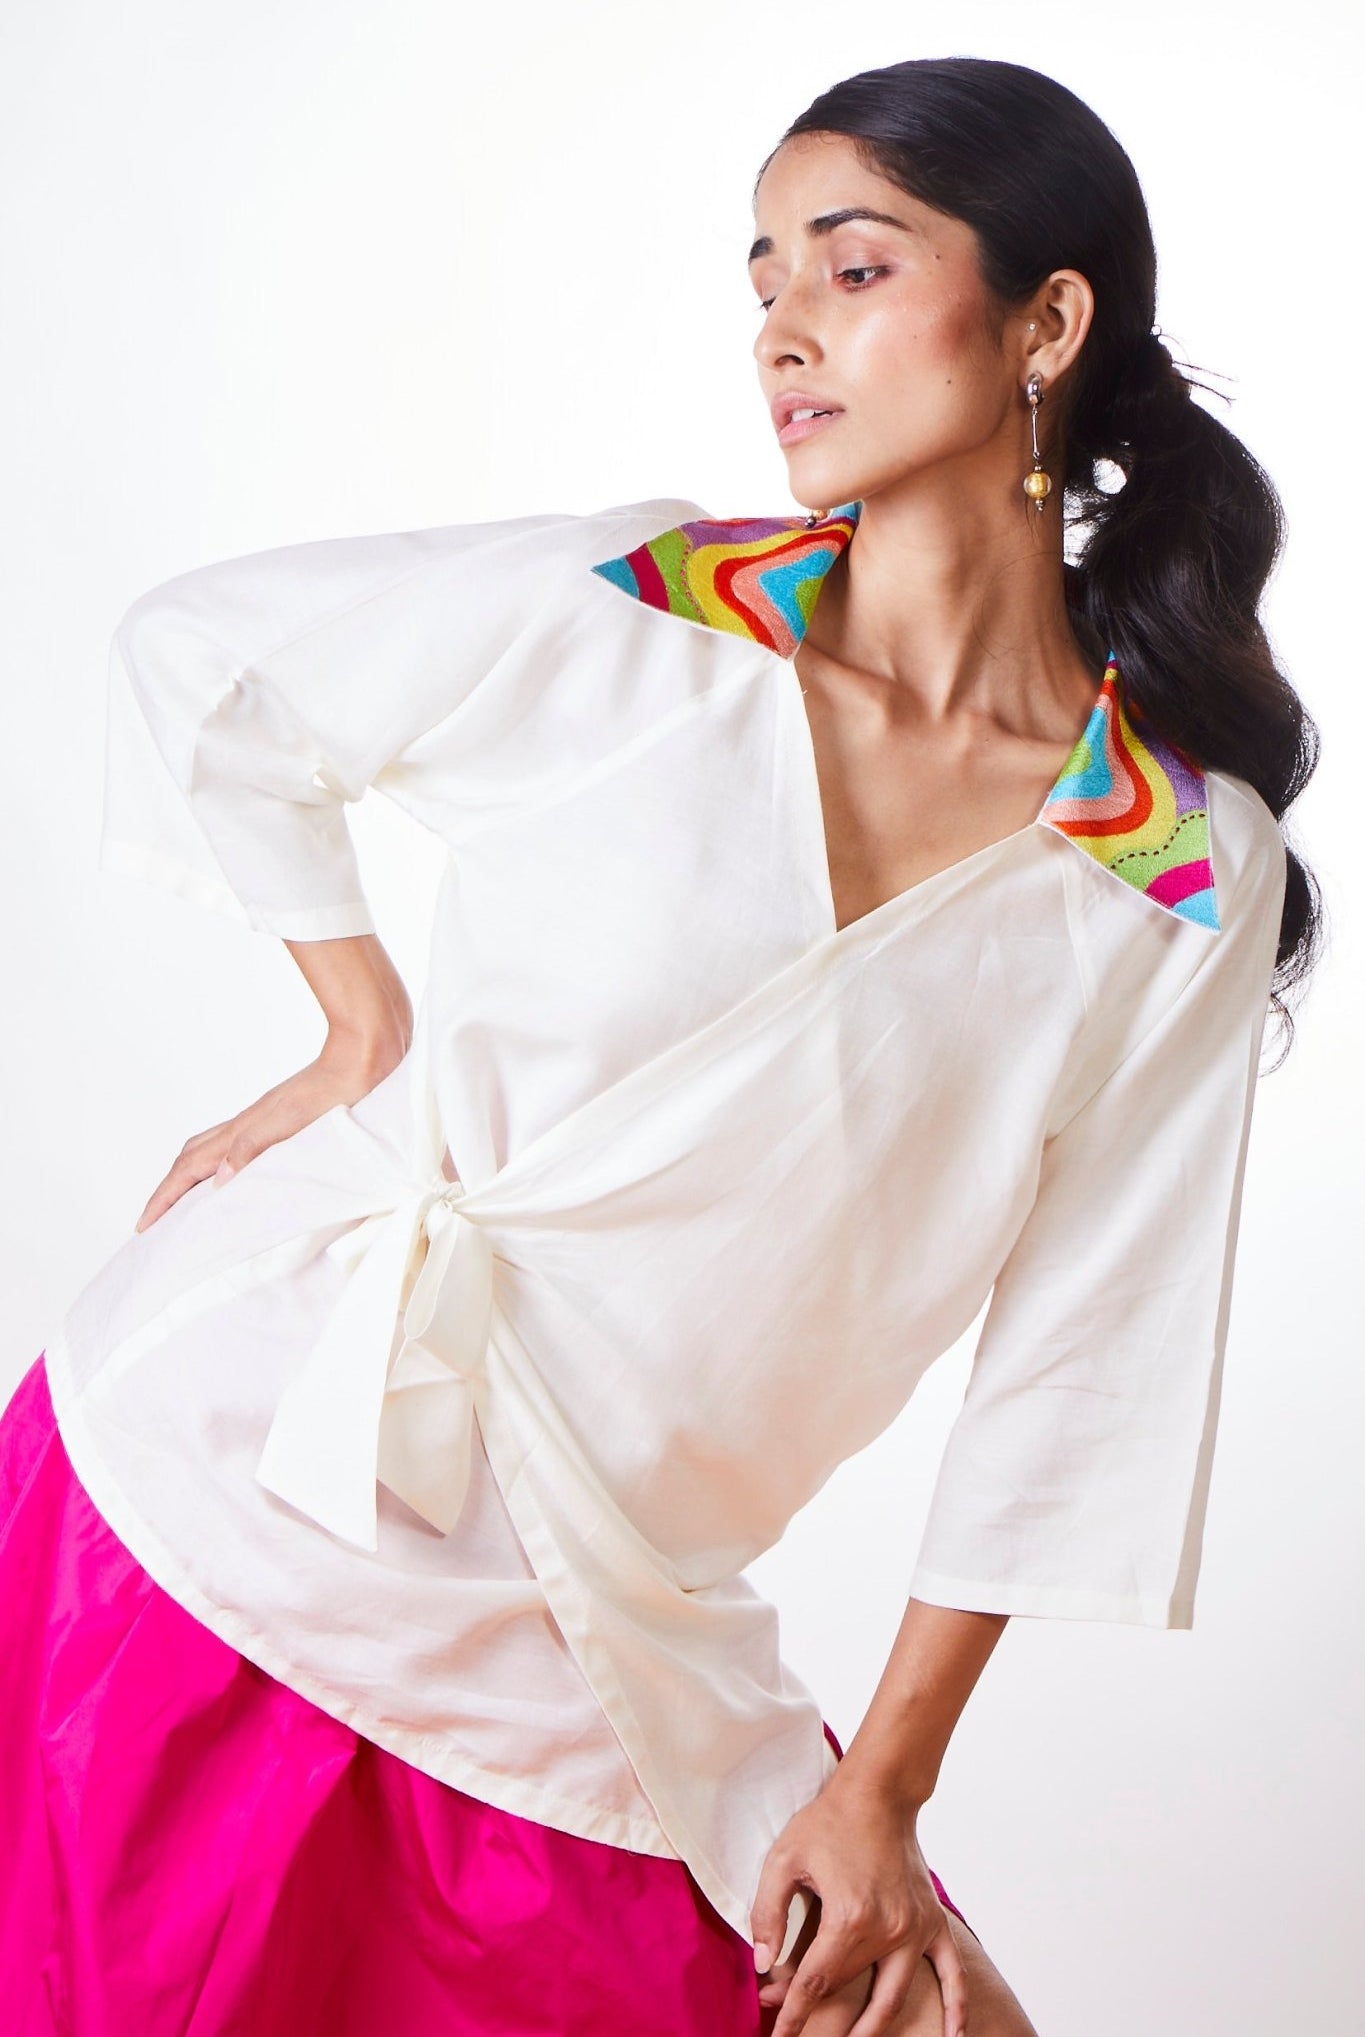 Ying Yang Kimono Top - CiceroniTopsArtbeats by Keerthana